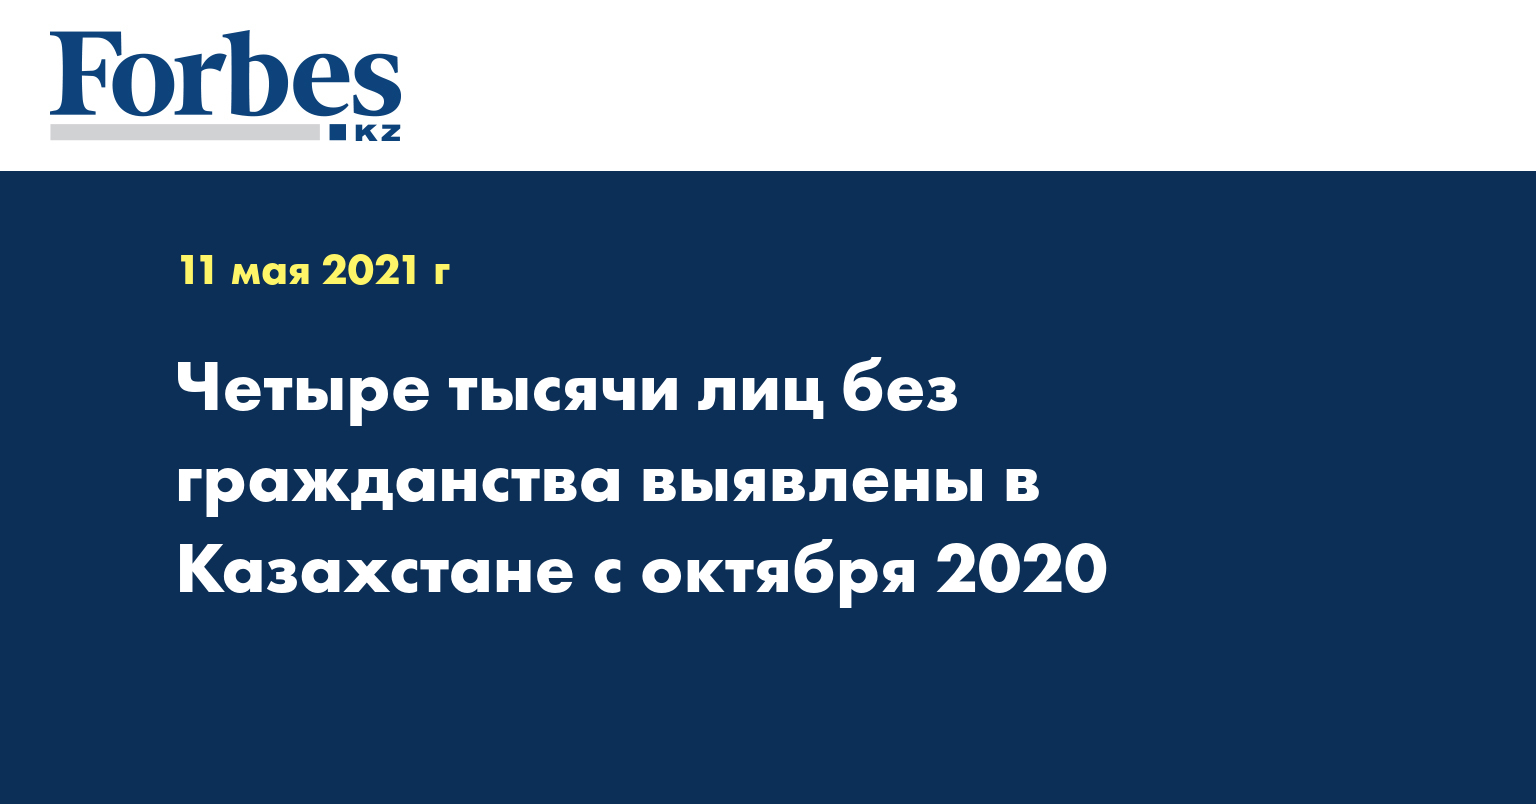 Четыре тысячи лиц без гражданства выявлены в Казахстане с октября 2020